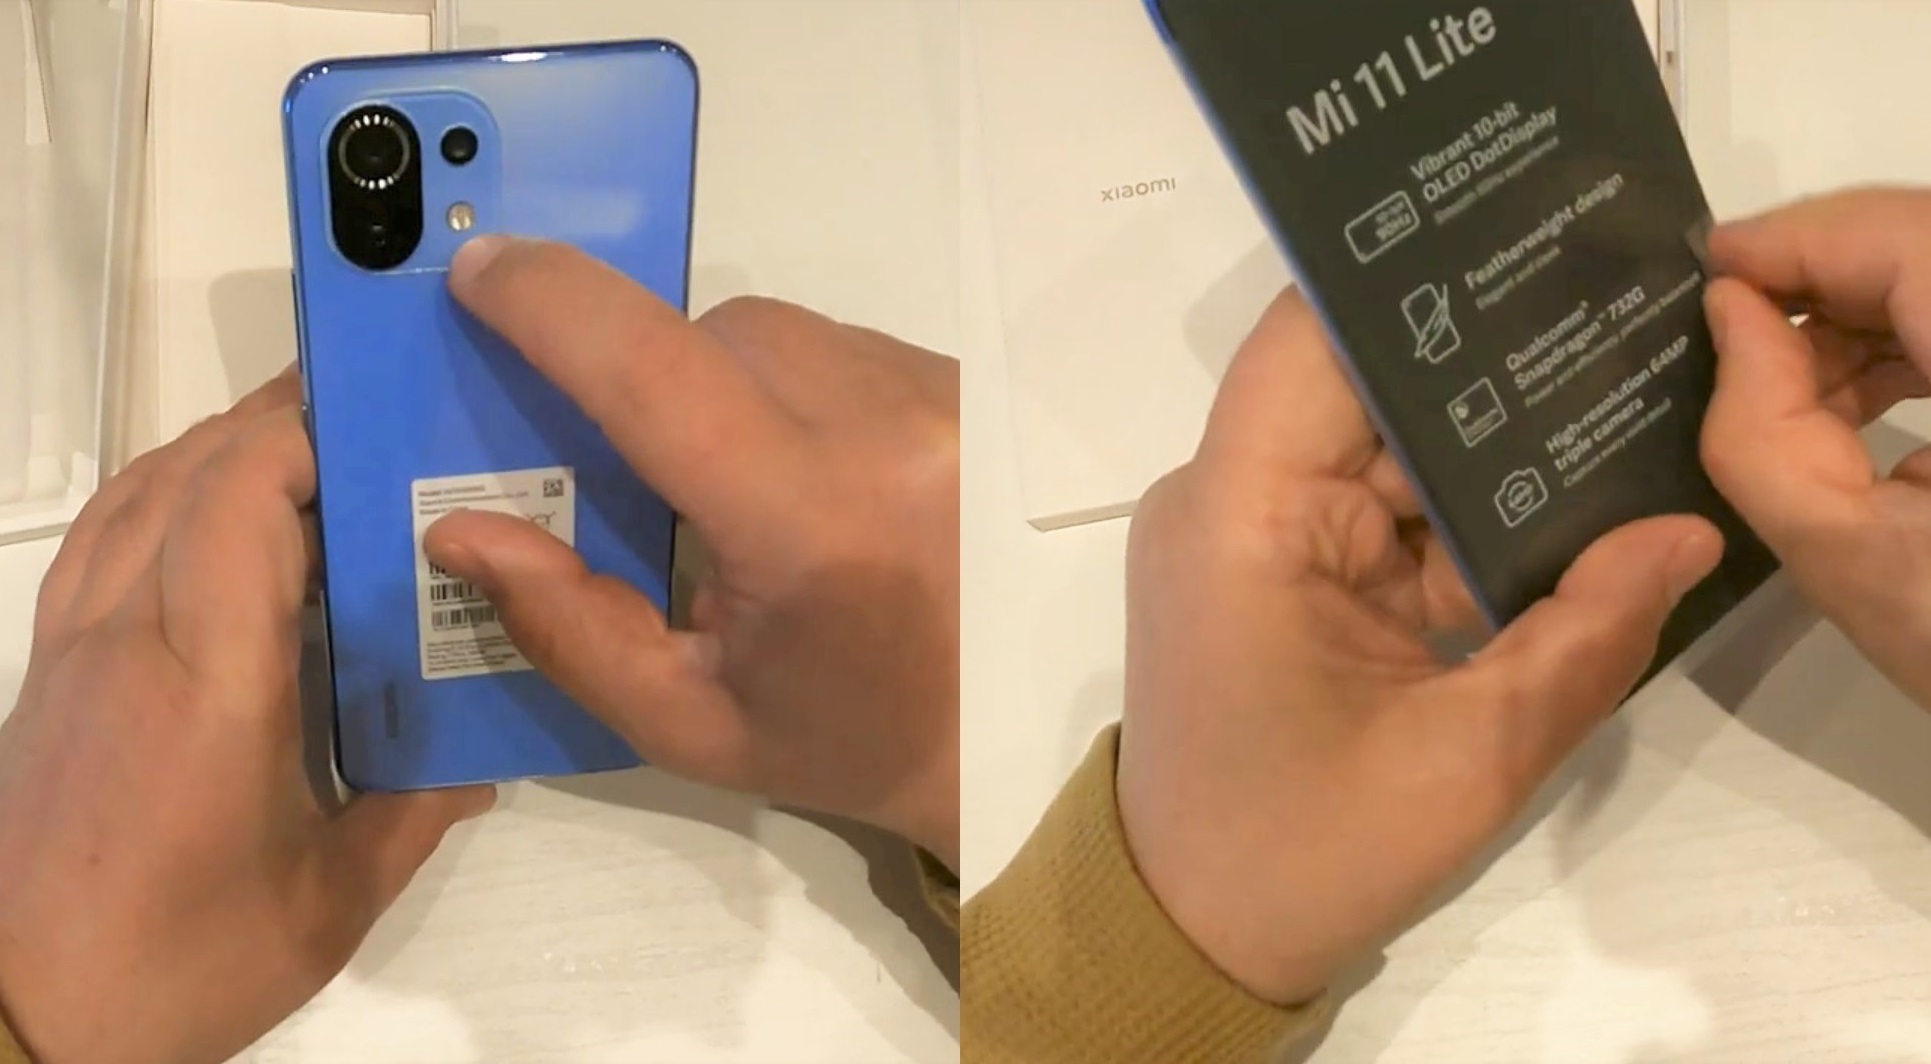 Сравнение Xiaomi Mi11 Lite